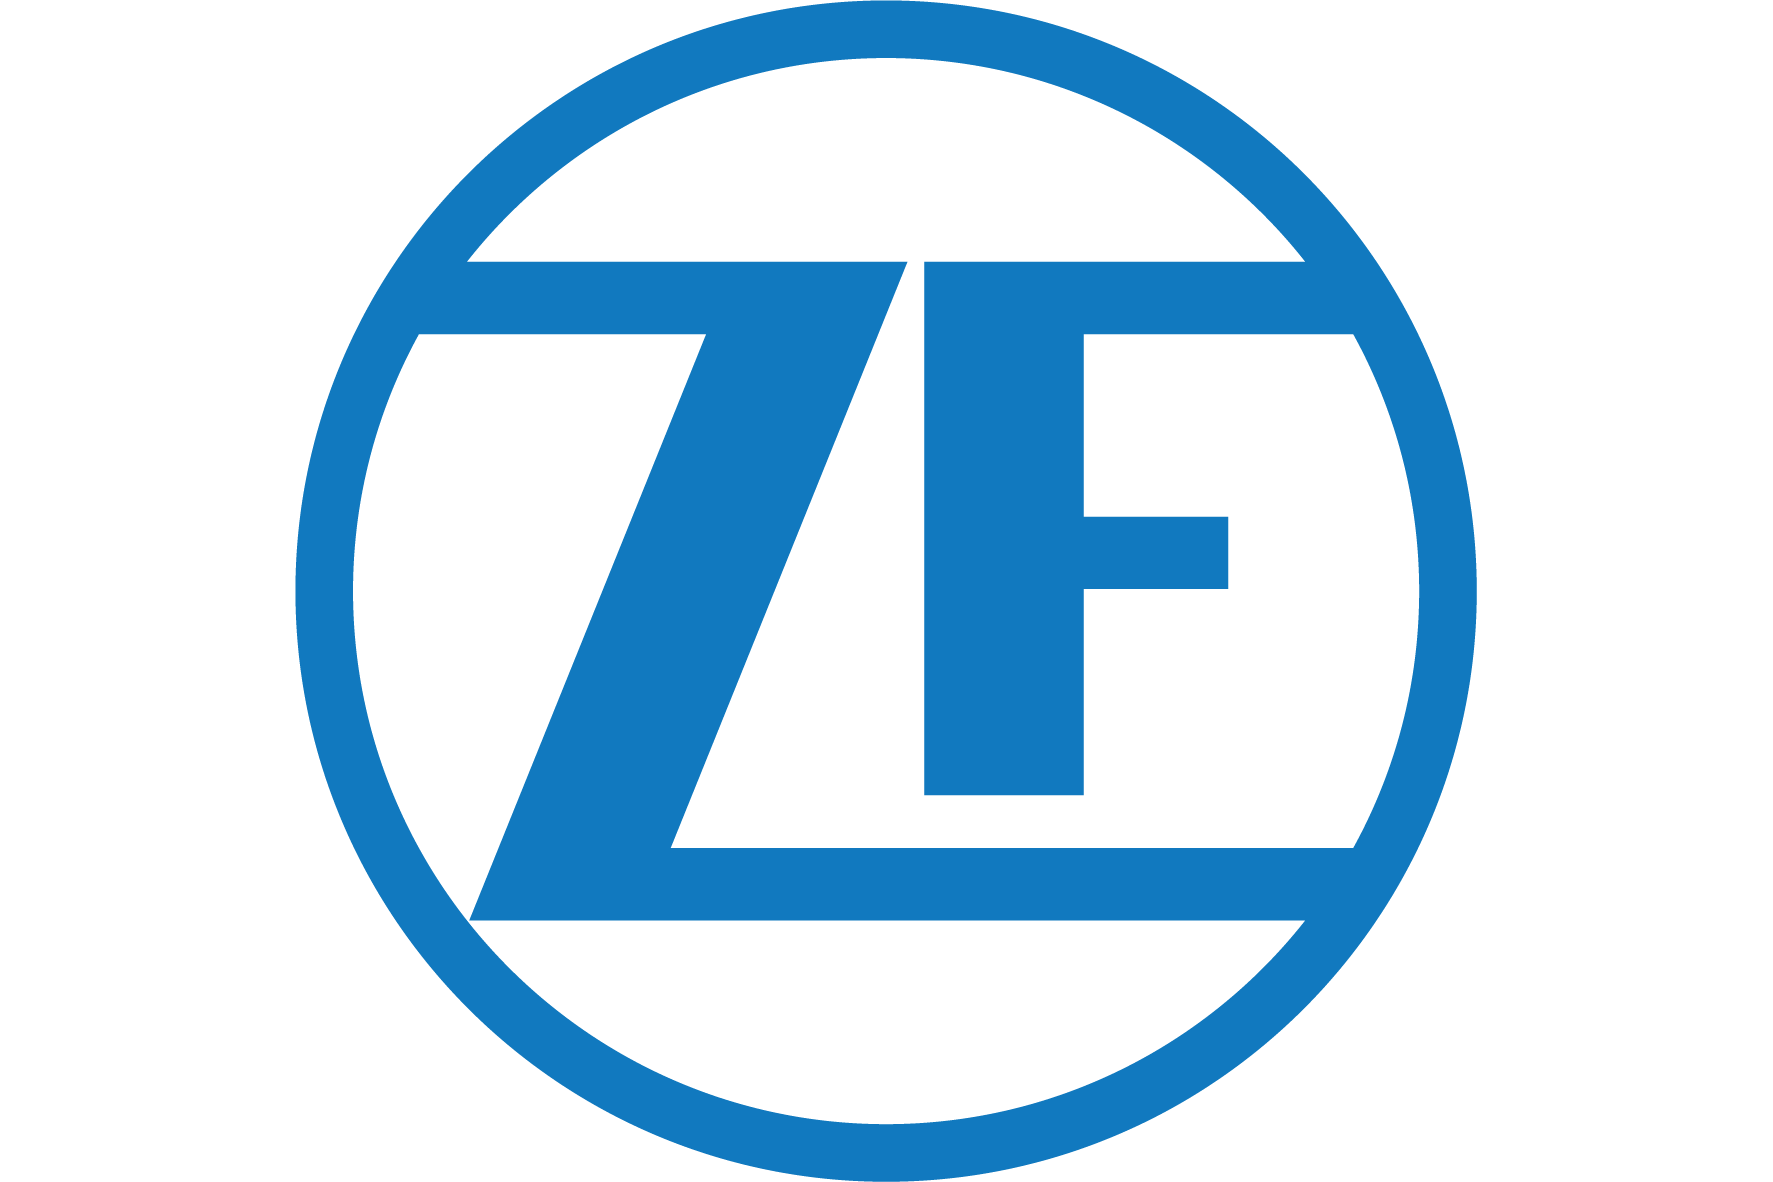 ZF Friedrichshafen base image